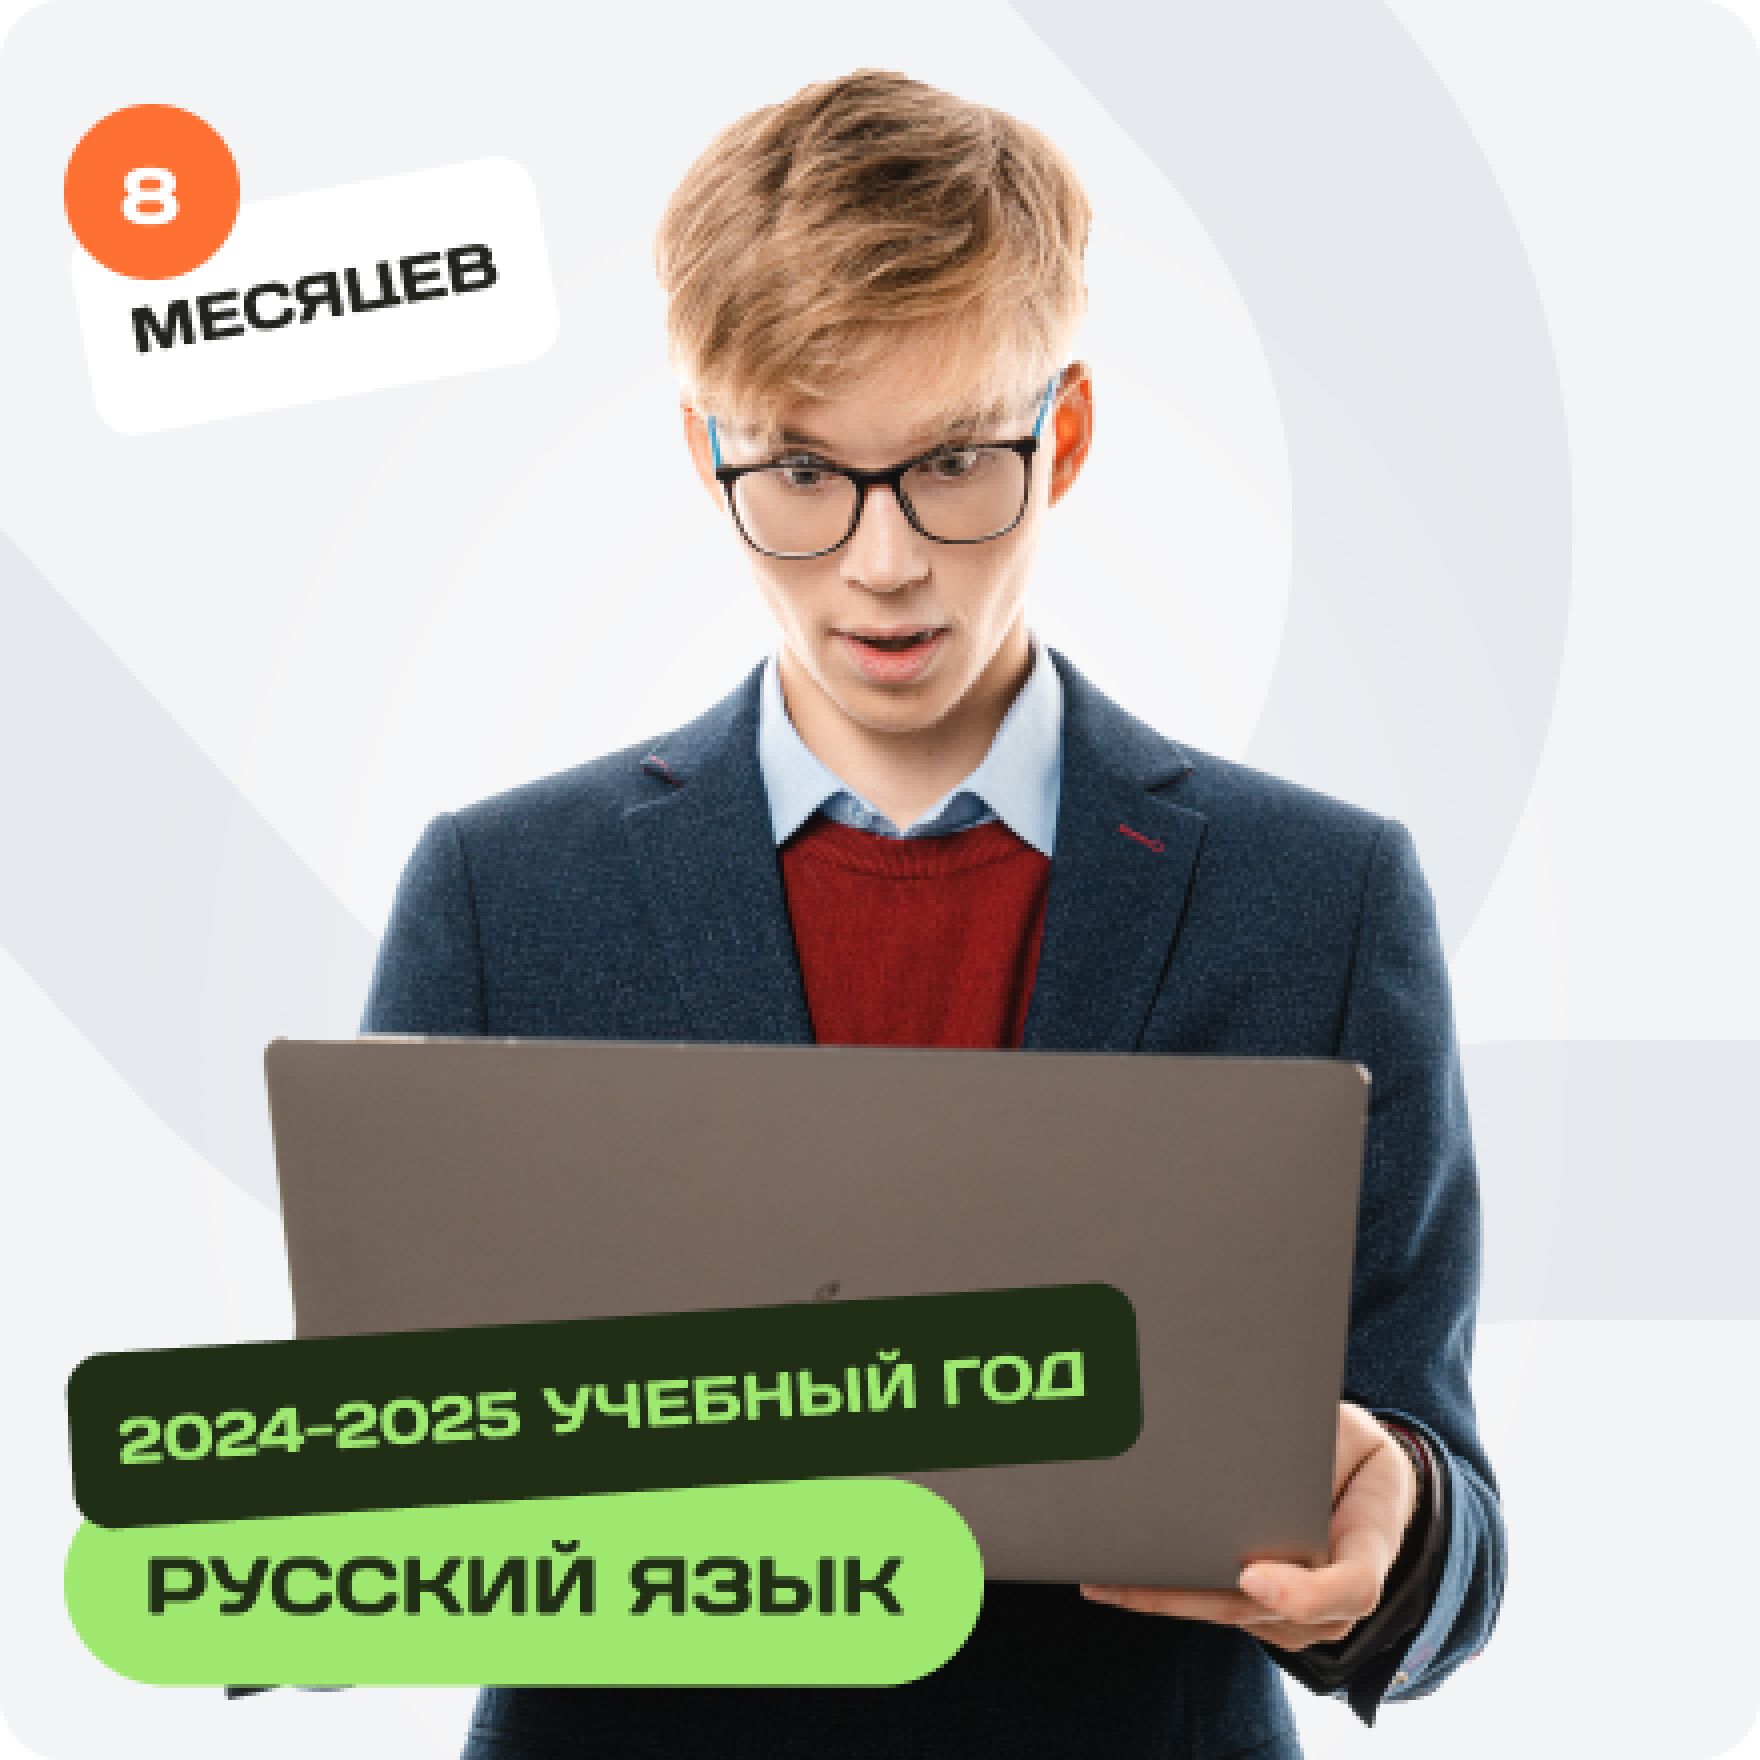 Русский язык. ОГЭ-2025 на сотку. Мини-группа